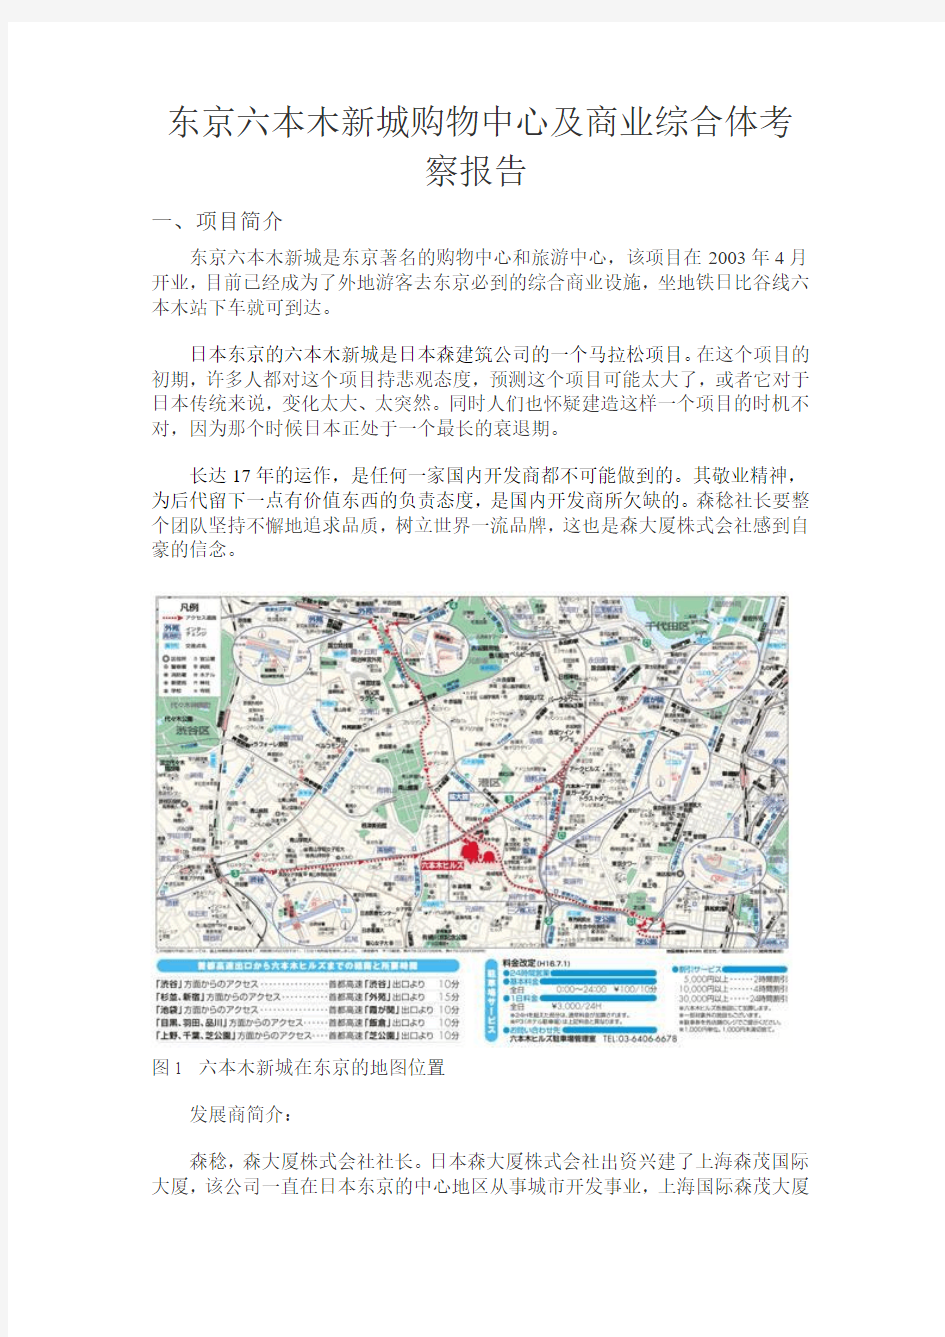 东京六本木综合体考察报告(含大量照片)